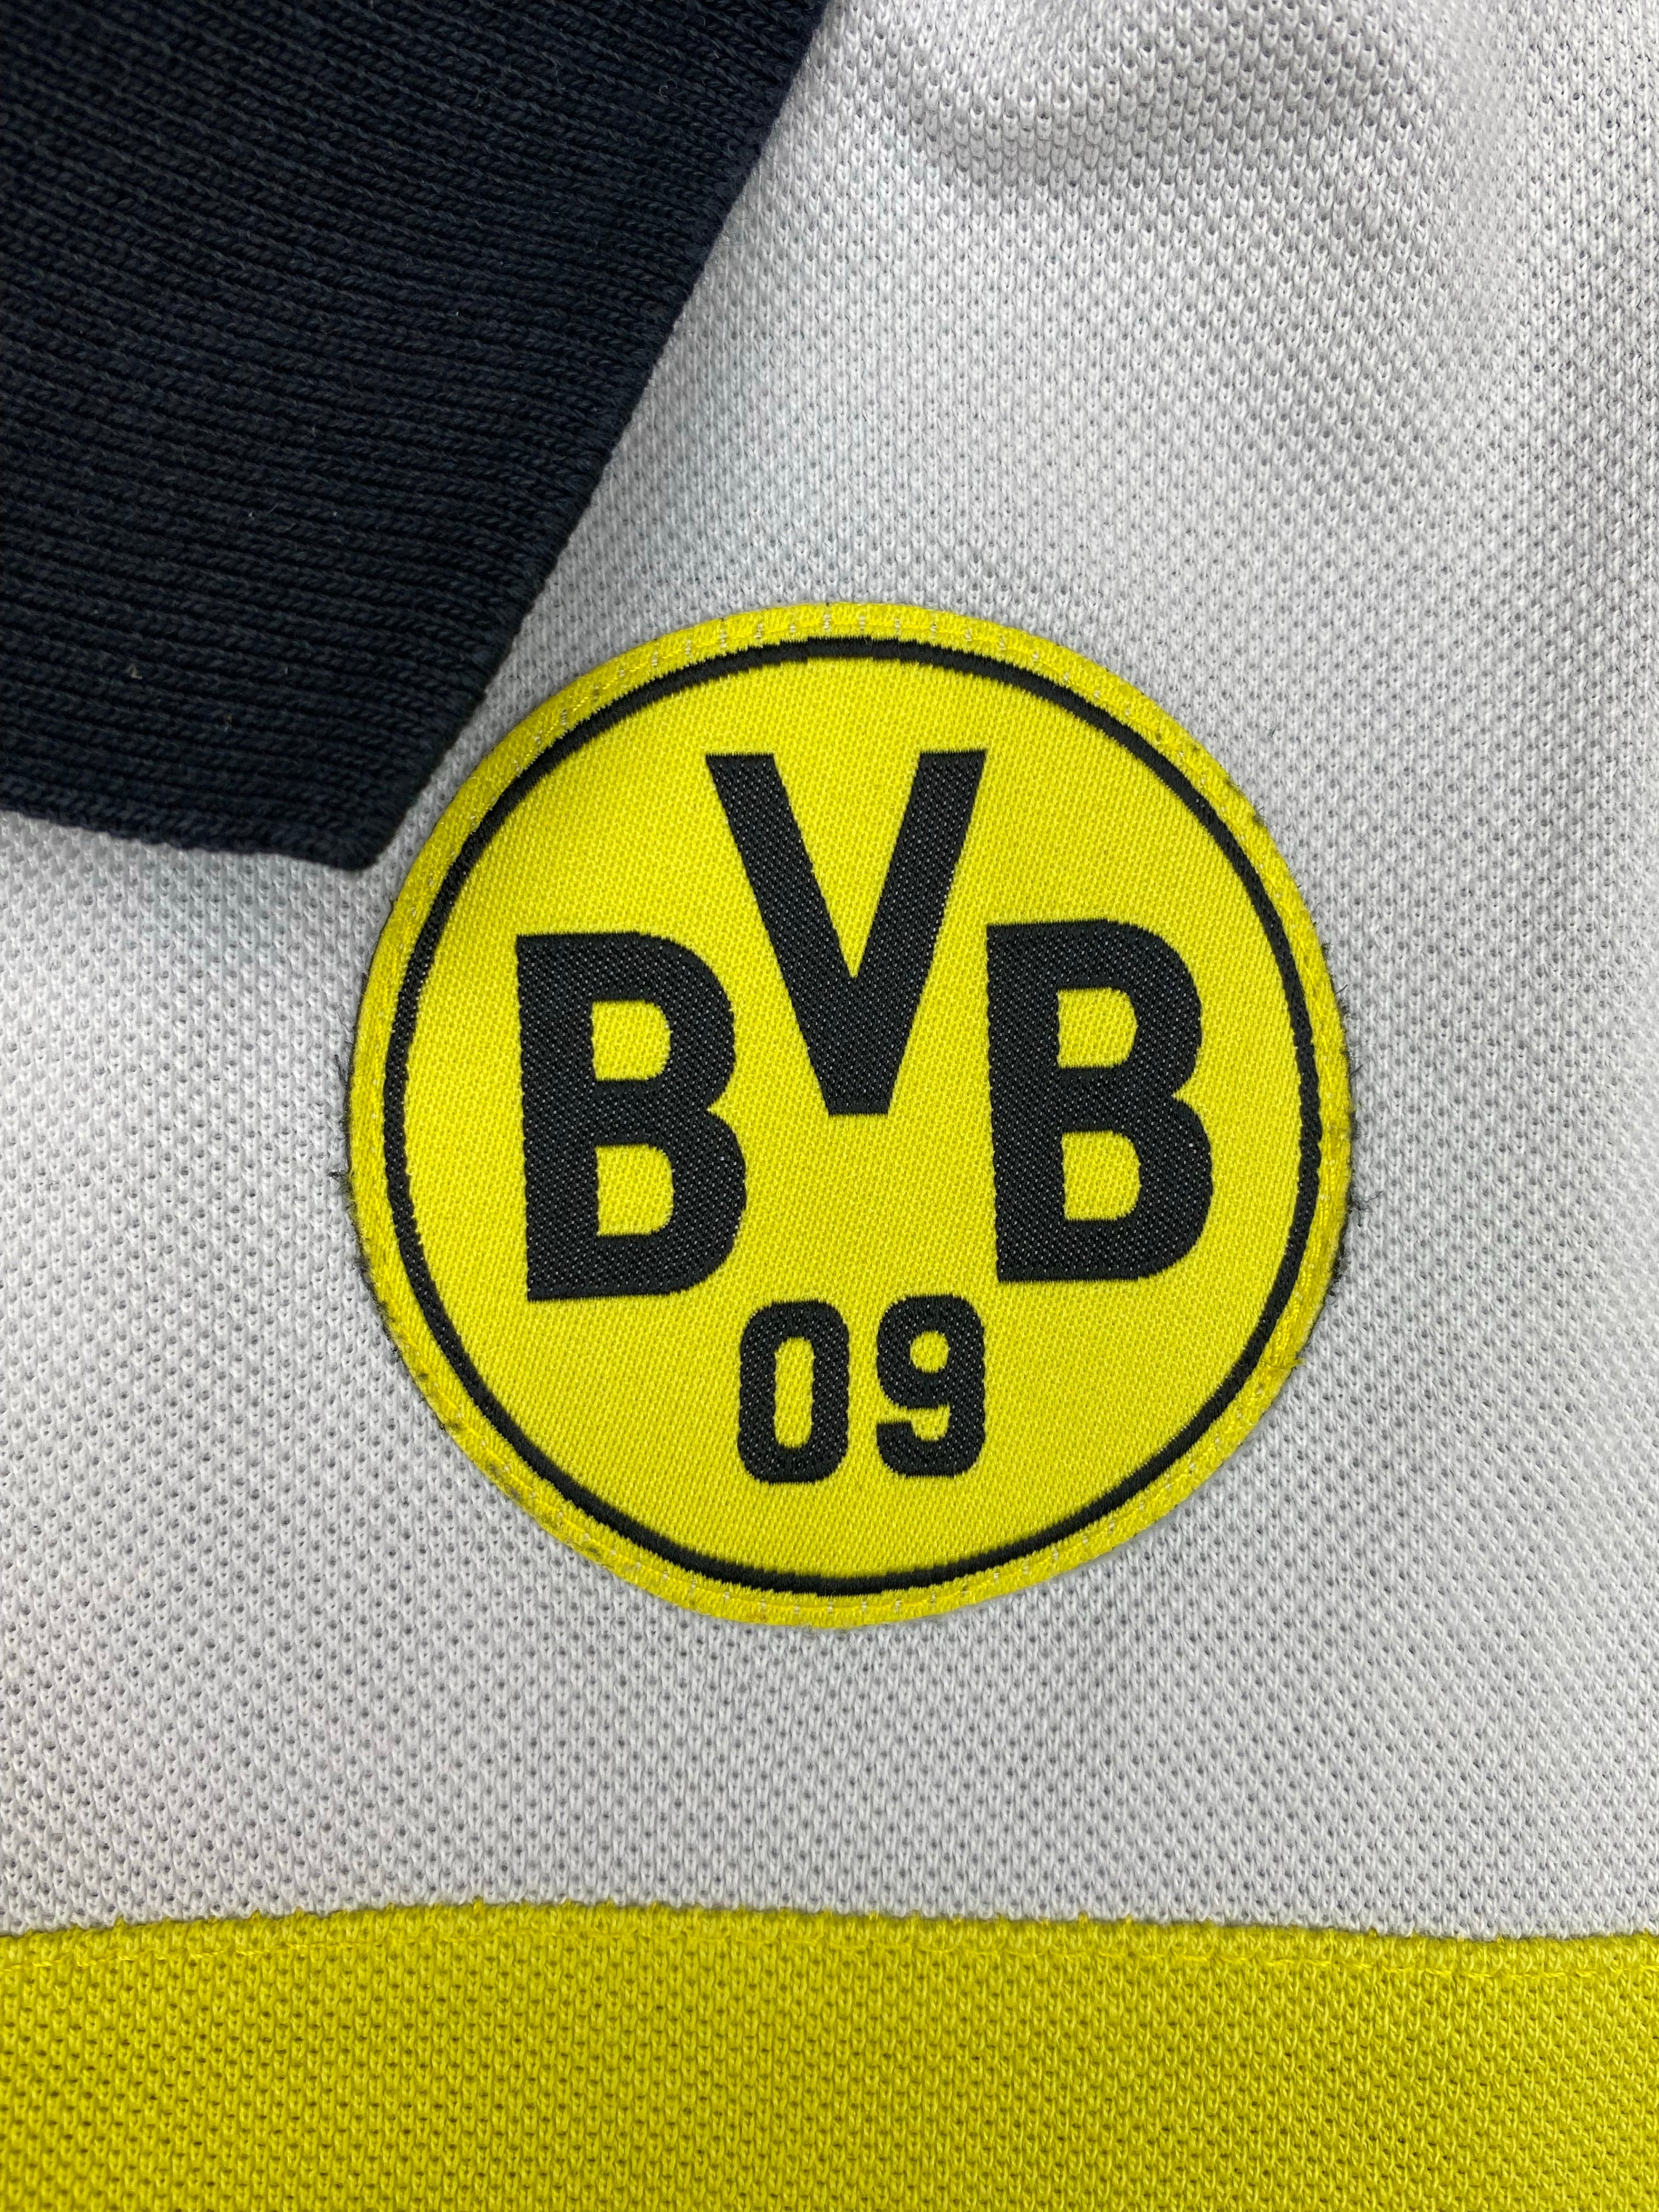 Polo Borussia Dortmund 2010/11 (L) 9/10